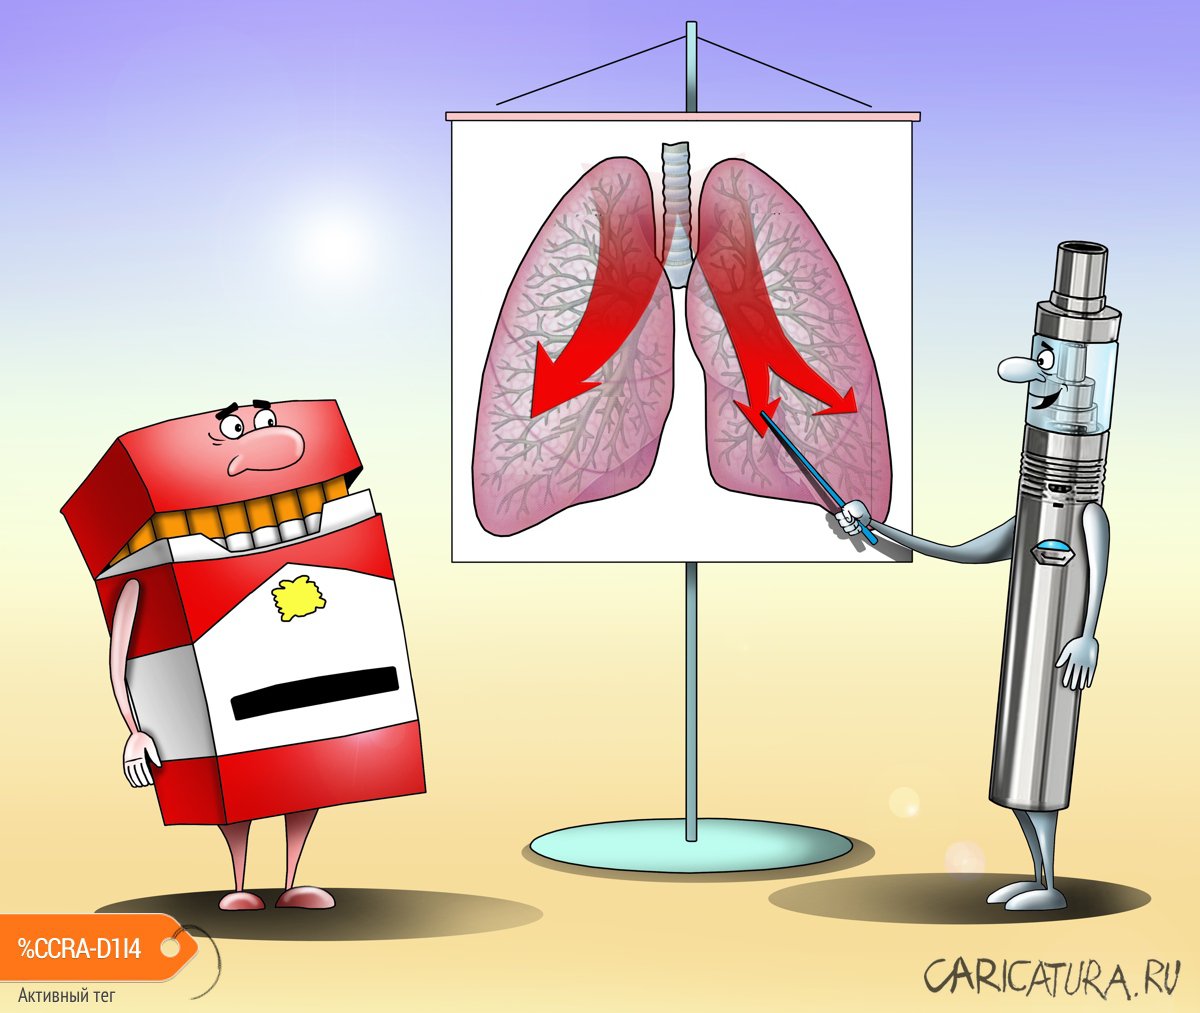 Карикатура "Вейпинг приводит к болезни легких", Сергей Корсун